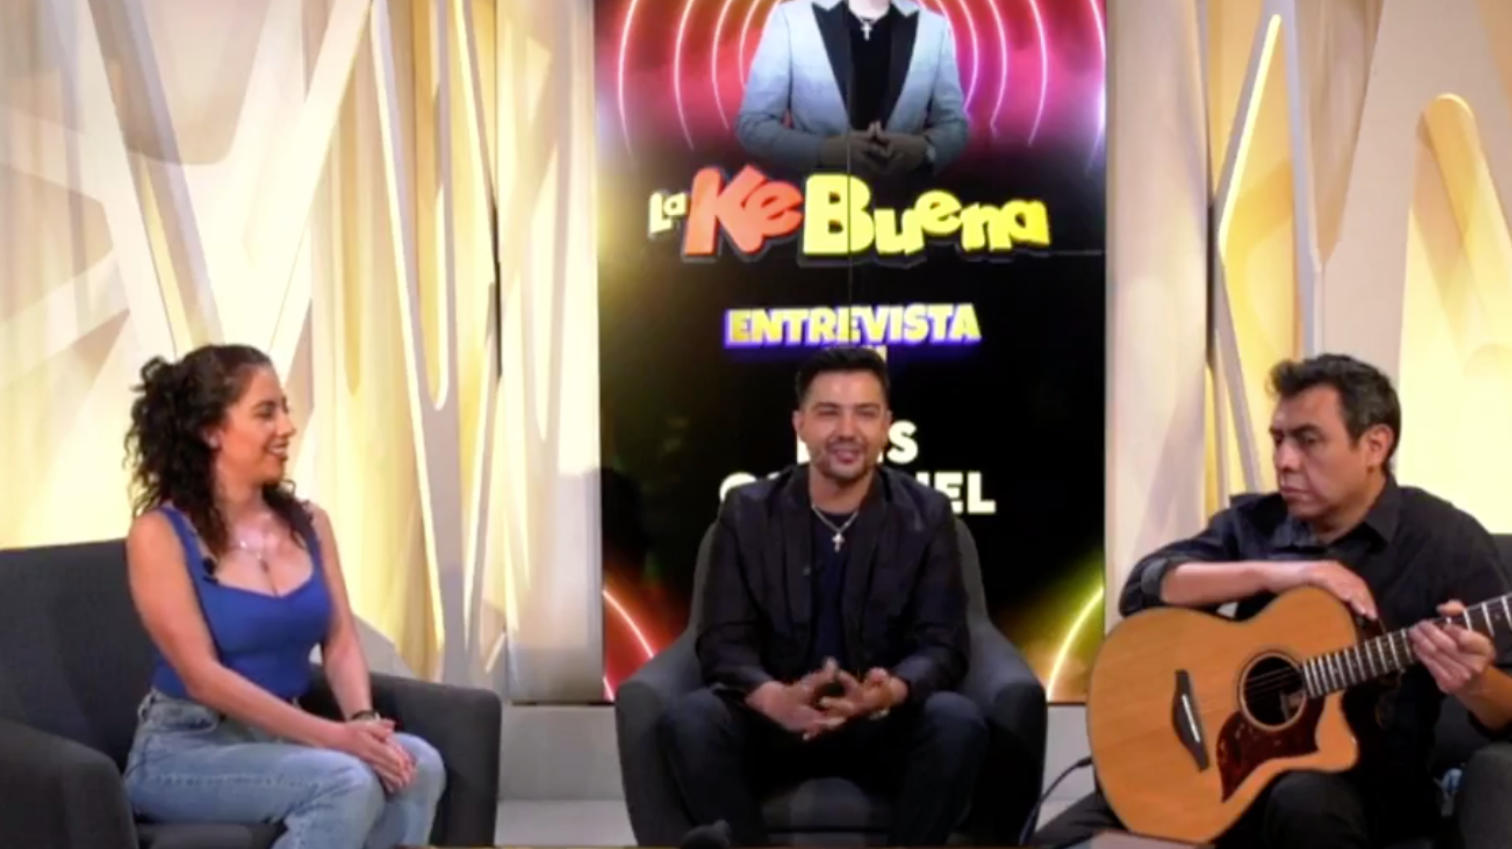 Luis Coronel en La KeBuena Entrevista nos presenta su nuevo álbum